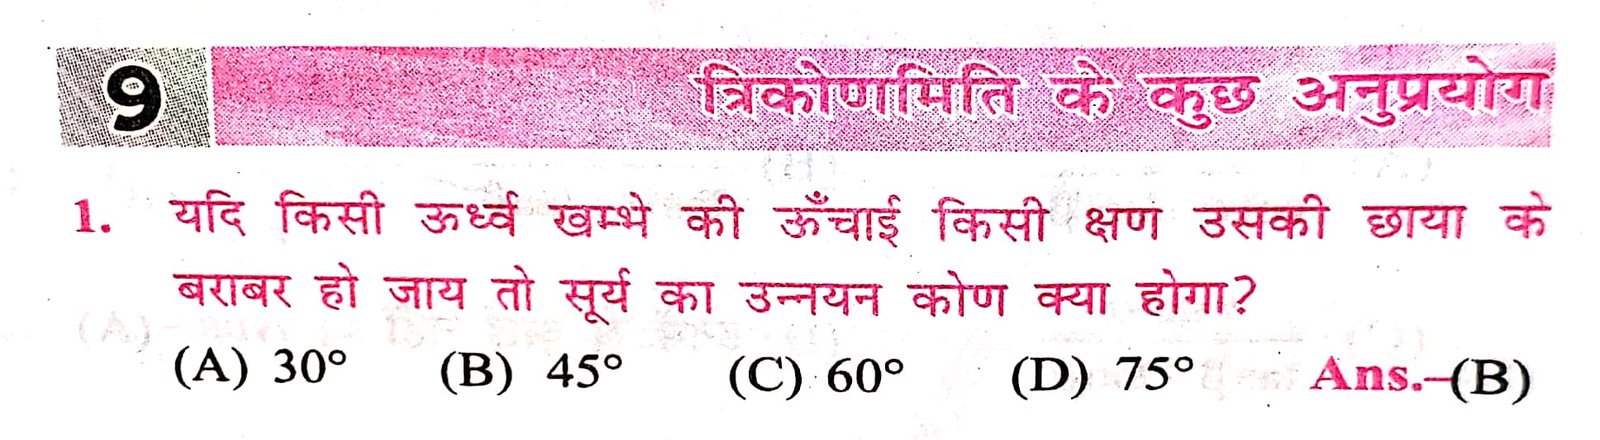 math ke sutra pdf hindi